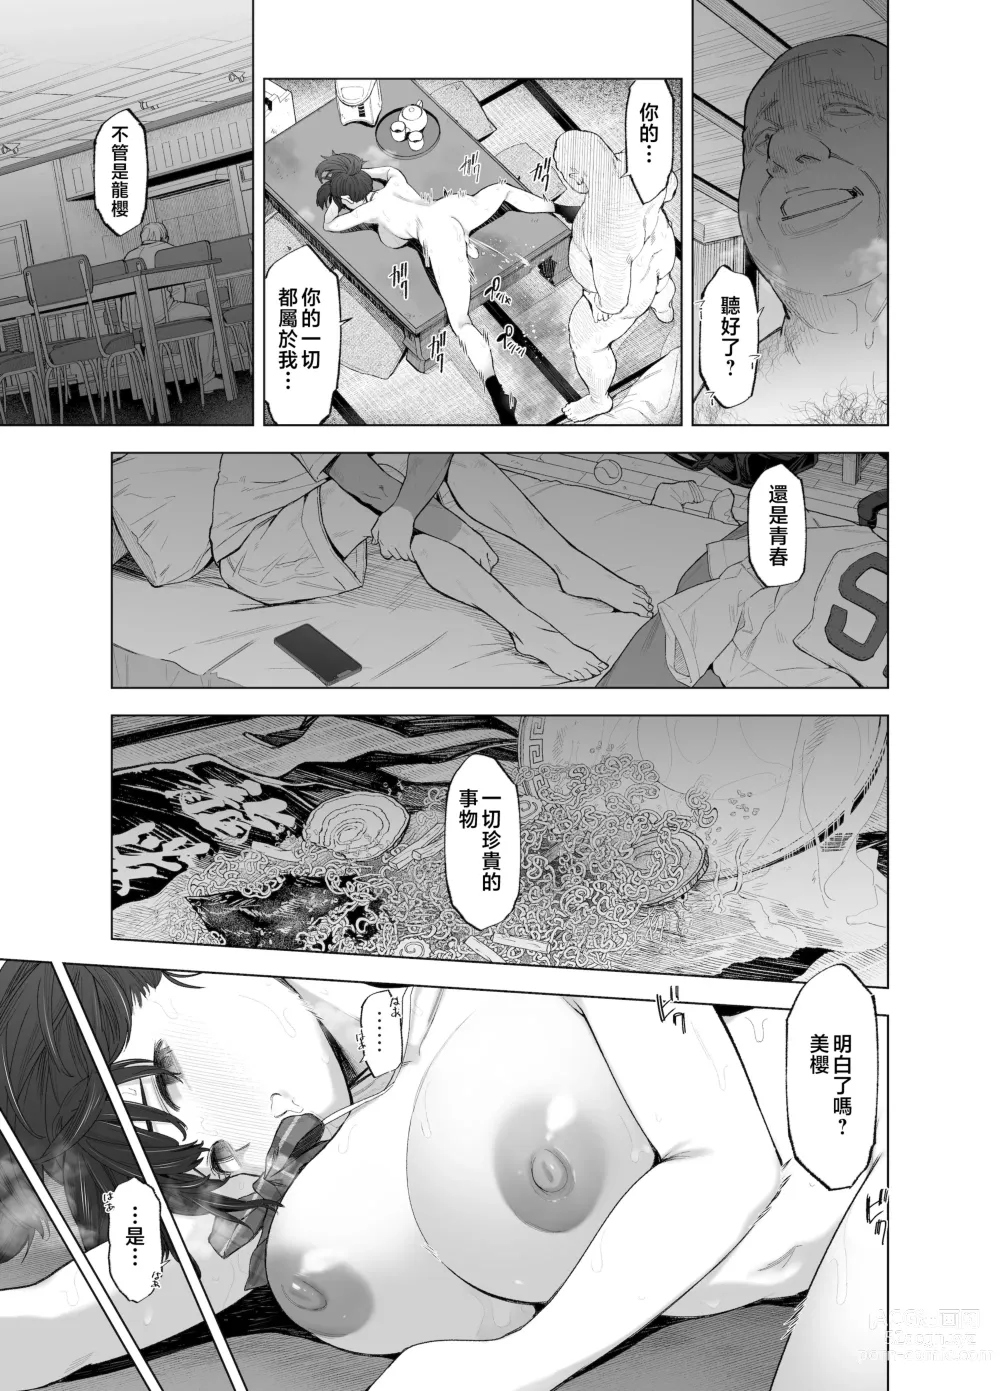 Page 32 of doujinshi Sakura Saku Chiru Hanabira Tsubomi Hokorobibu ~Ossan no Nikutsubo e to Ochi Hateta Saiai no Osananajimi Yoshioka Mio~